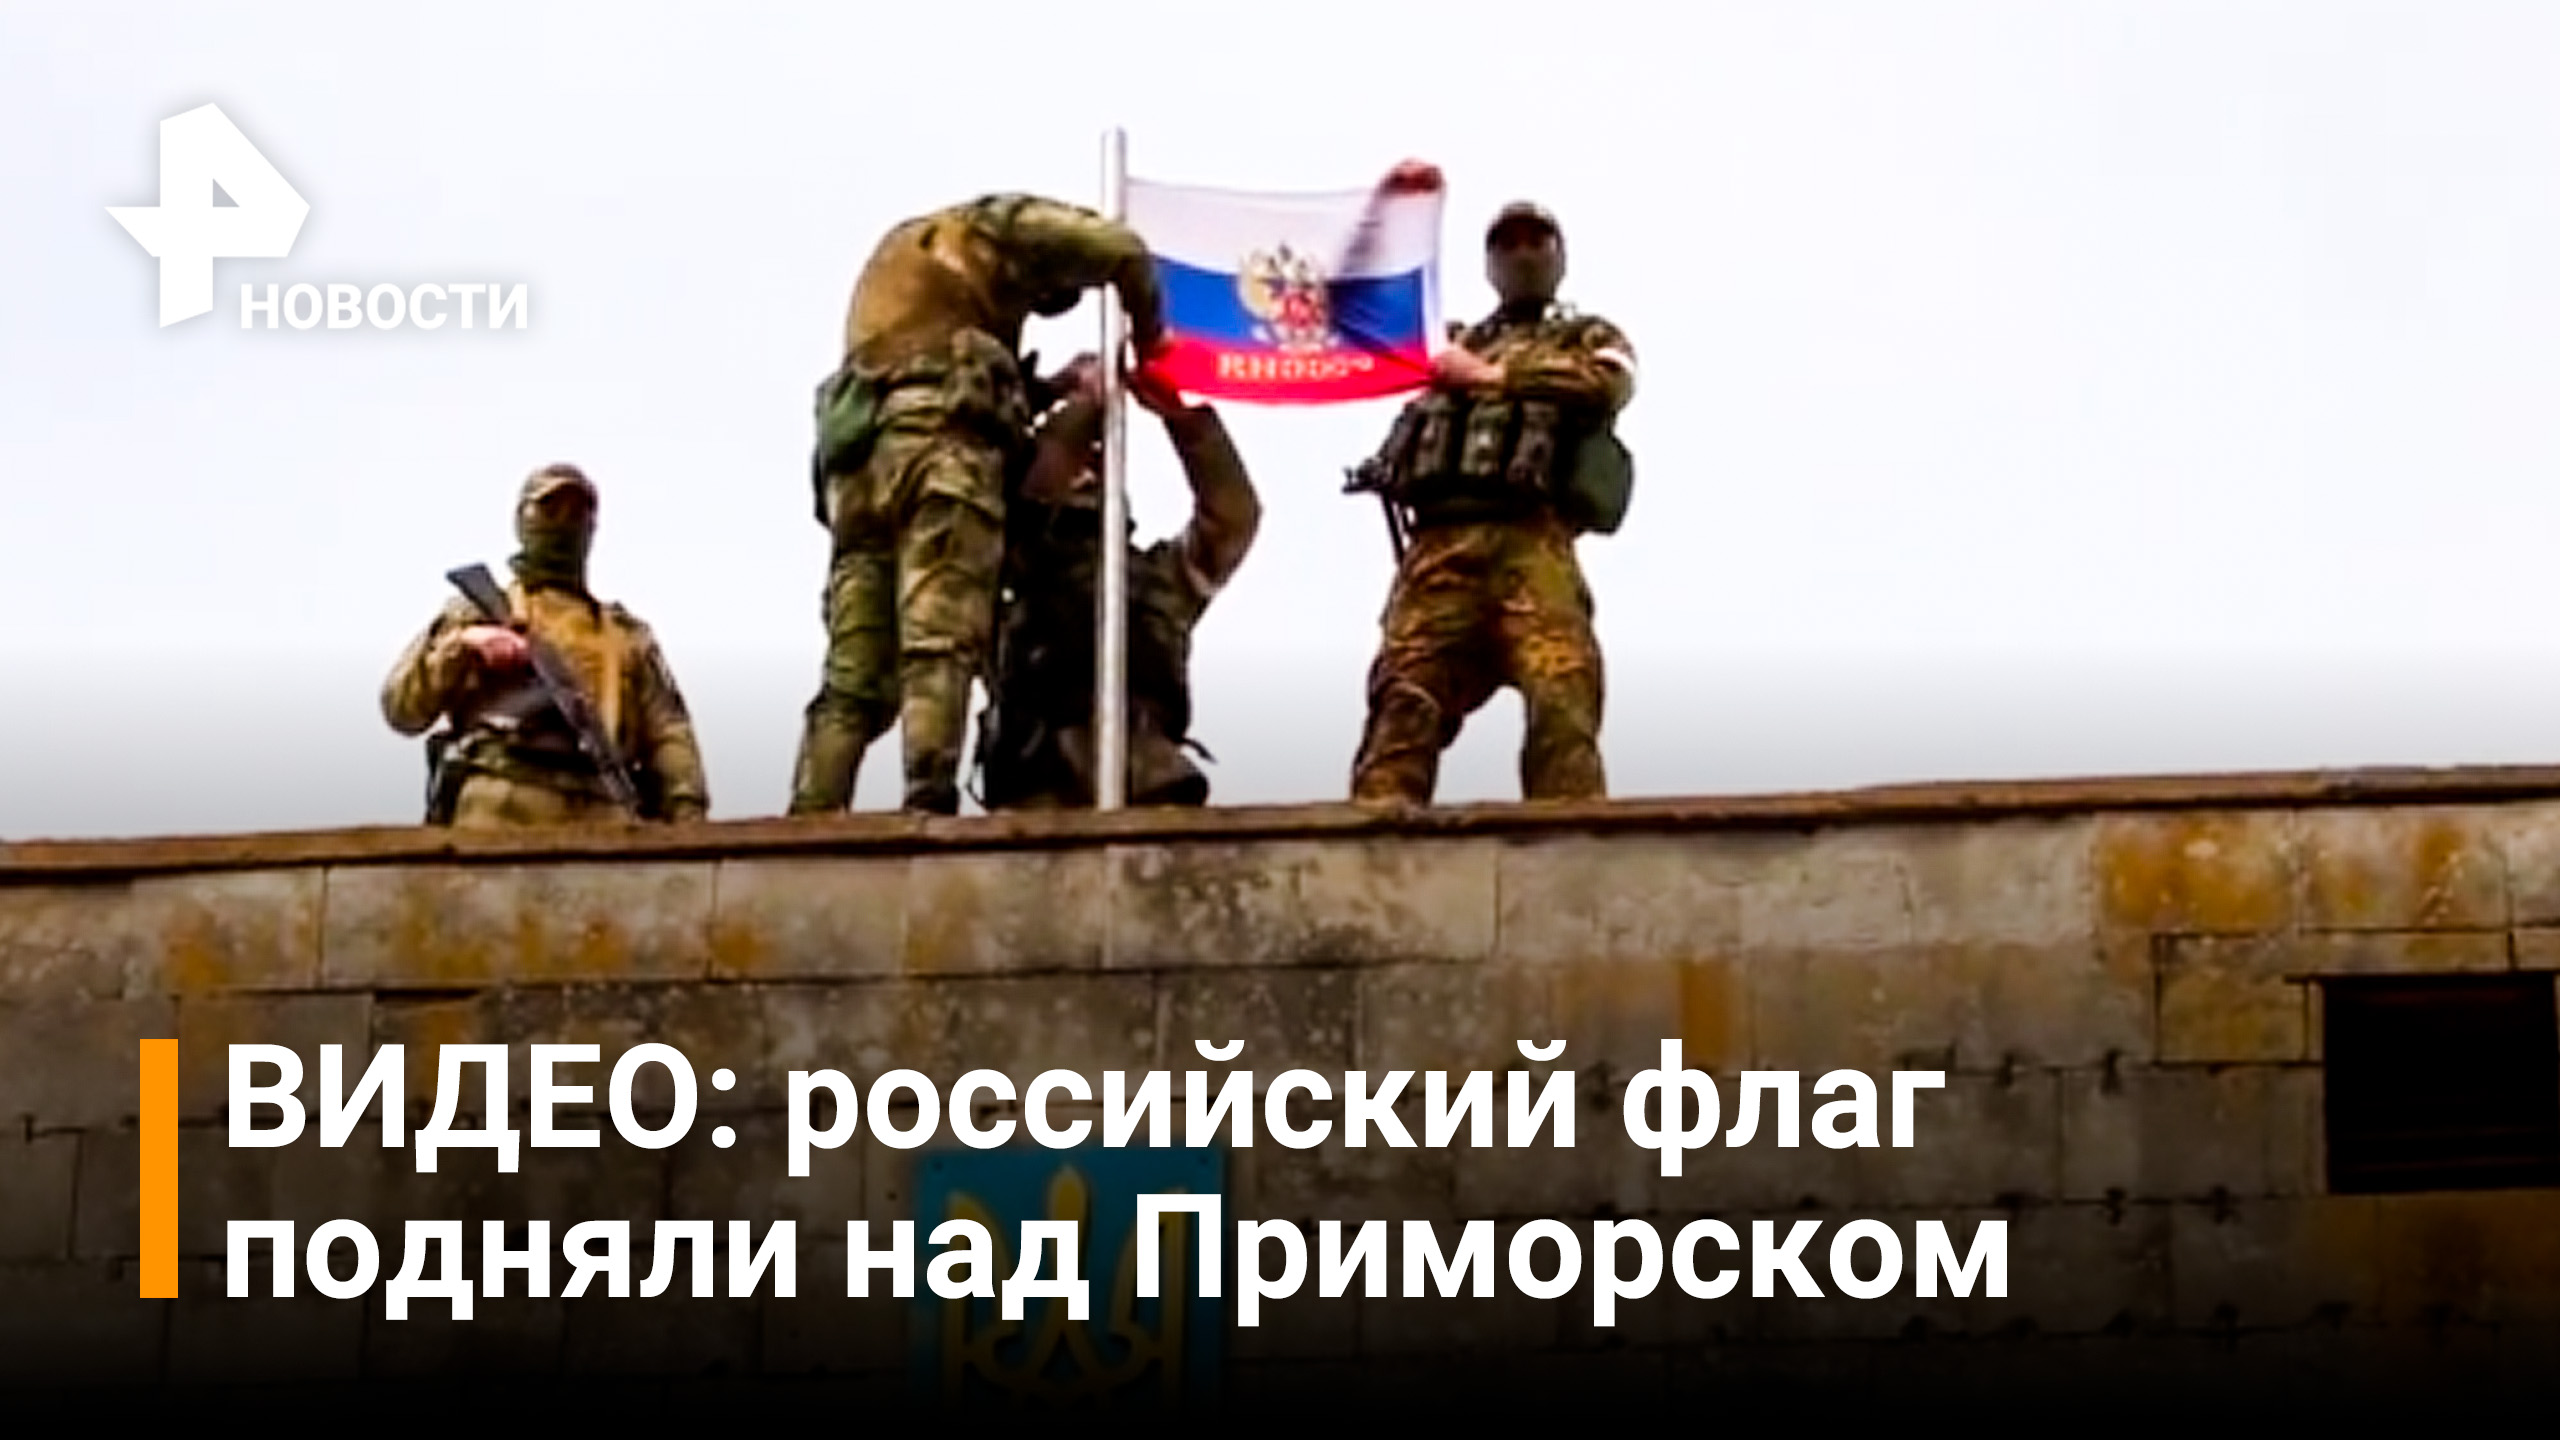 Российский флаг подняли над администрацией Приморска / РЕН Новости